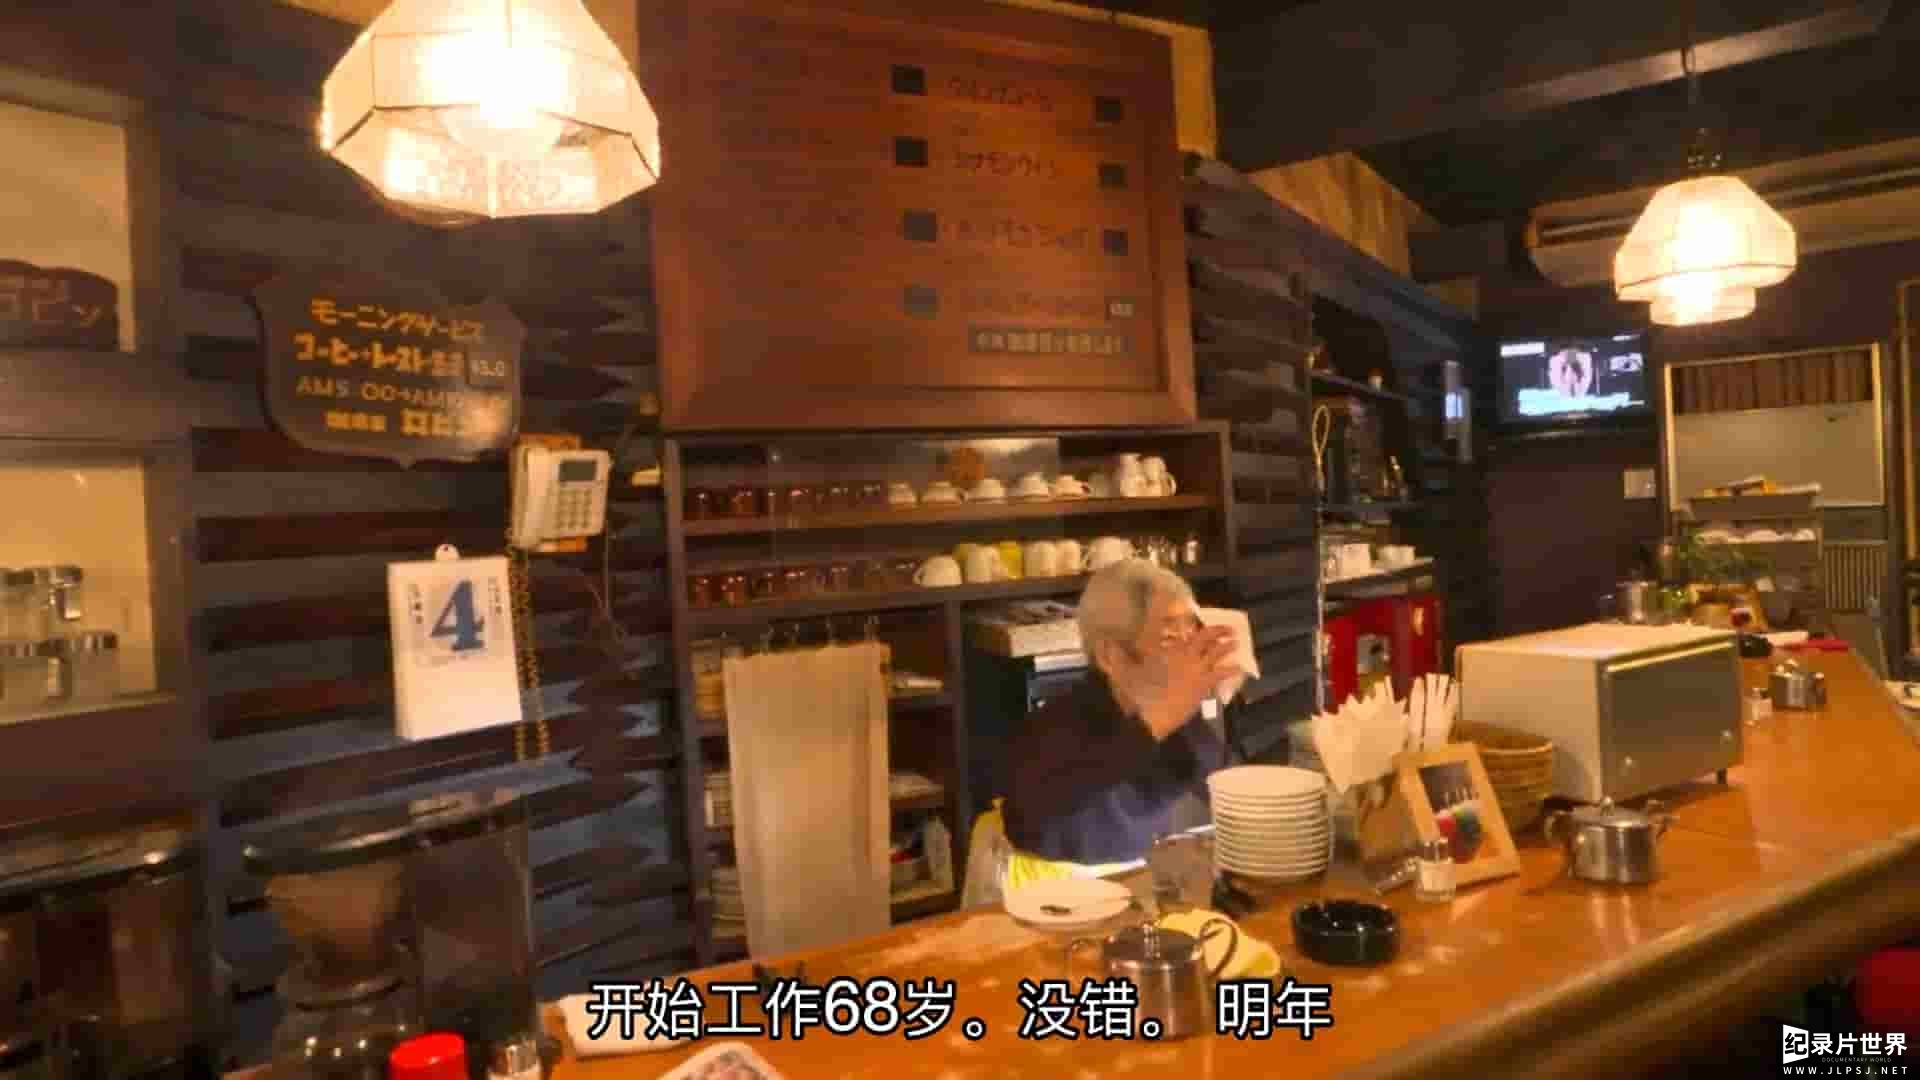 日本纪录片/日本美食与匠人精神纪录片《89岁老奶奶的咖啡店》全1集